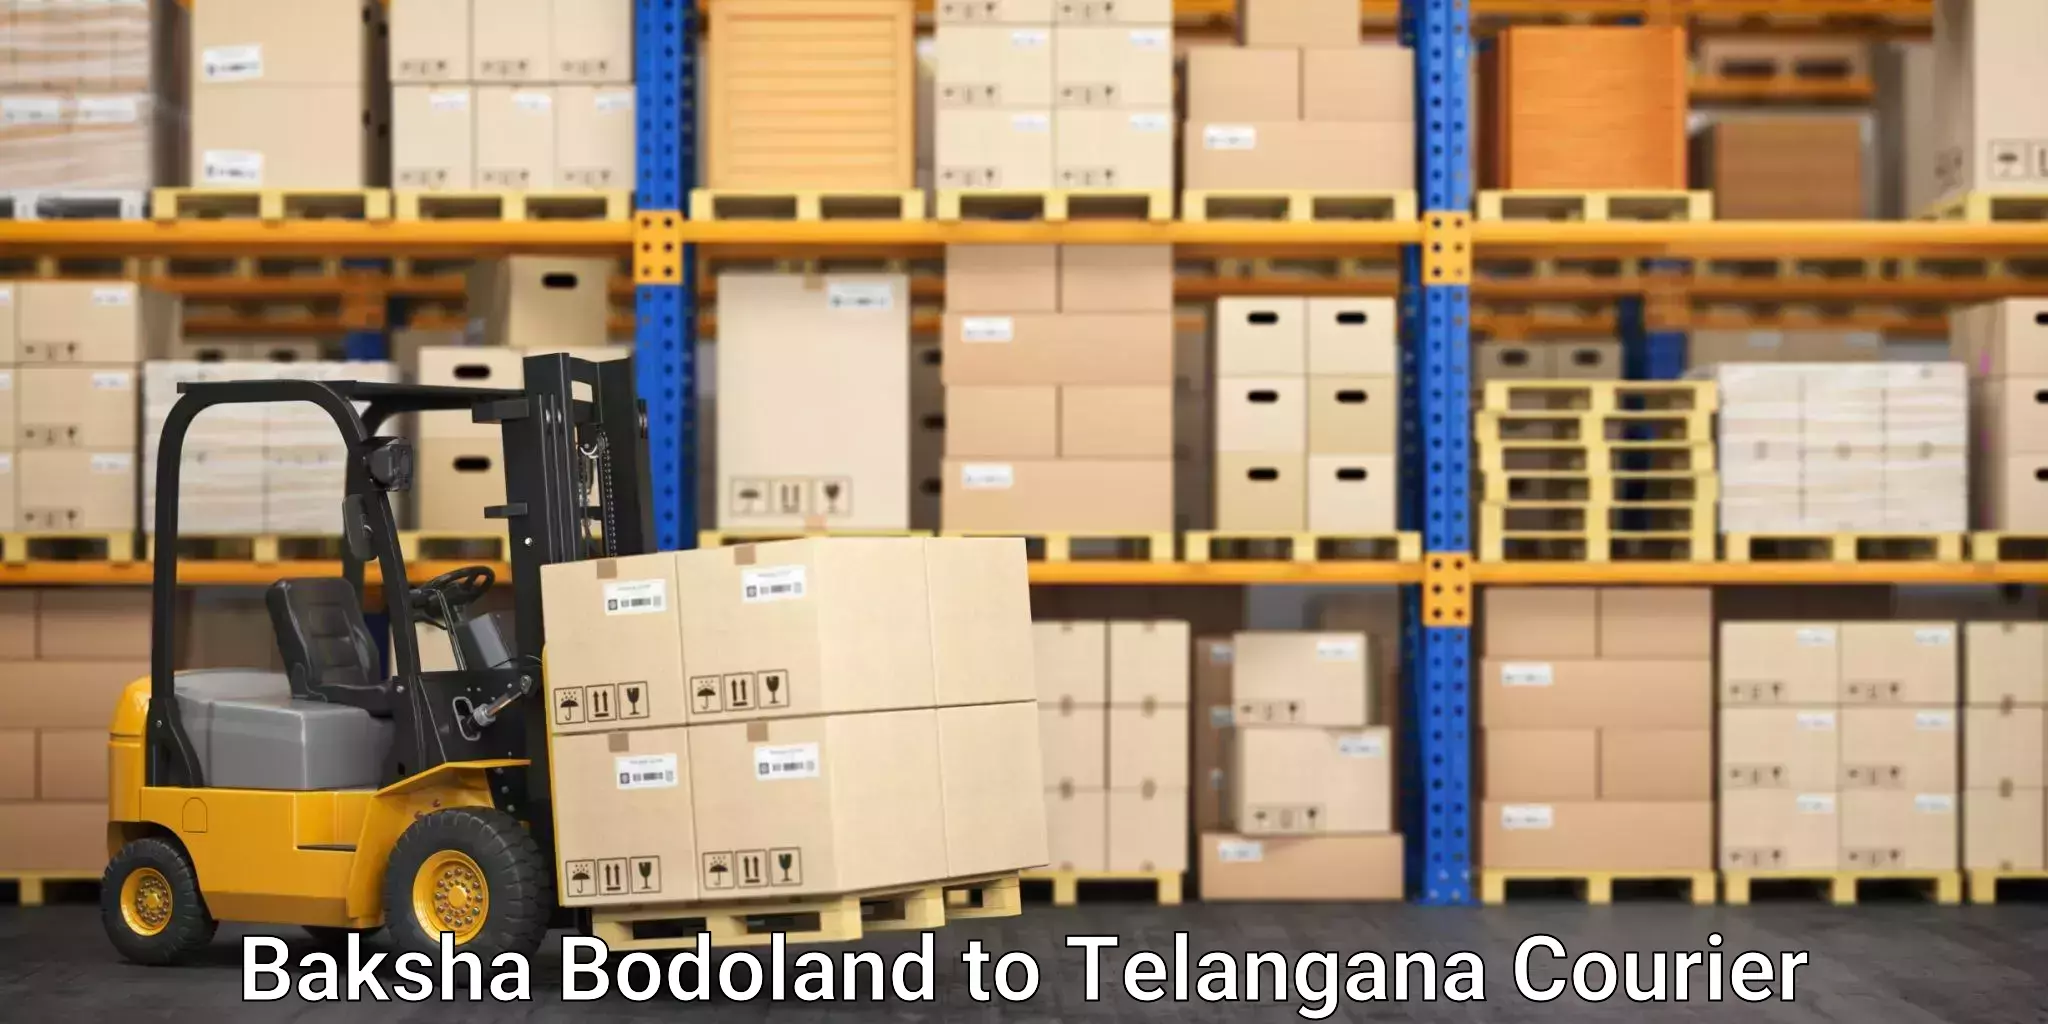 Efficient package consolidation Baksha Bodoland to Odela